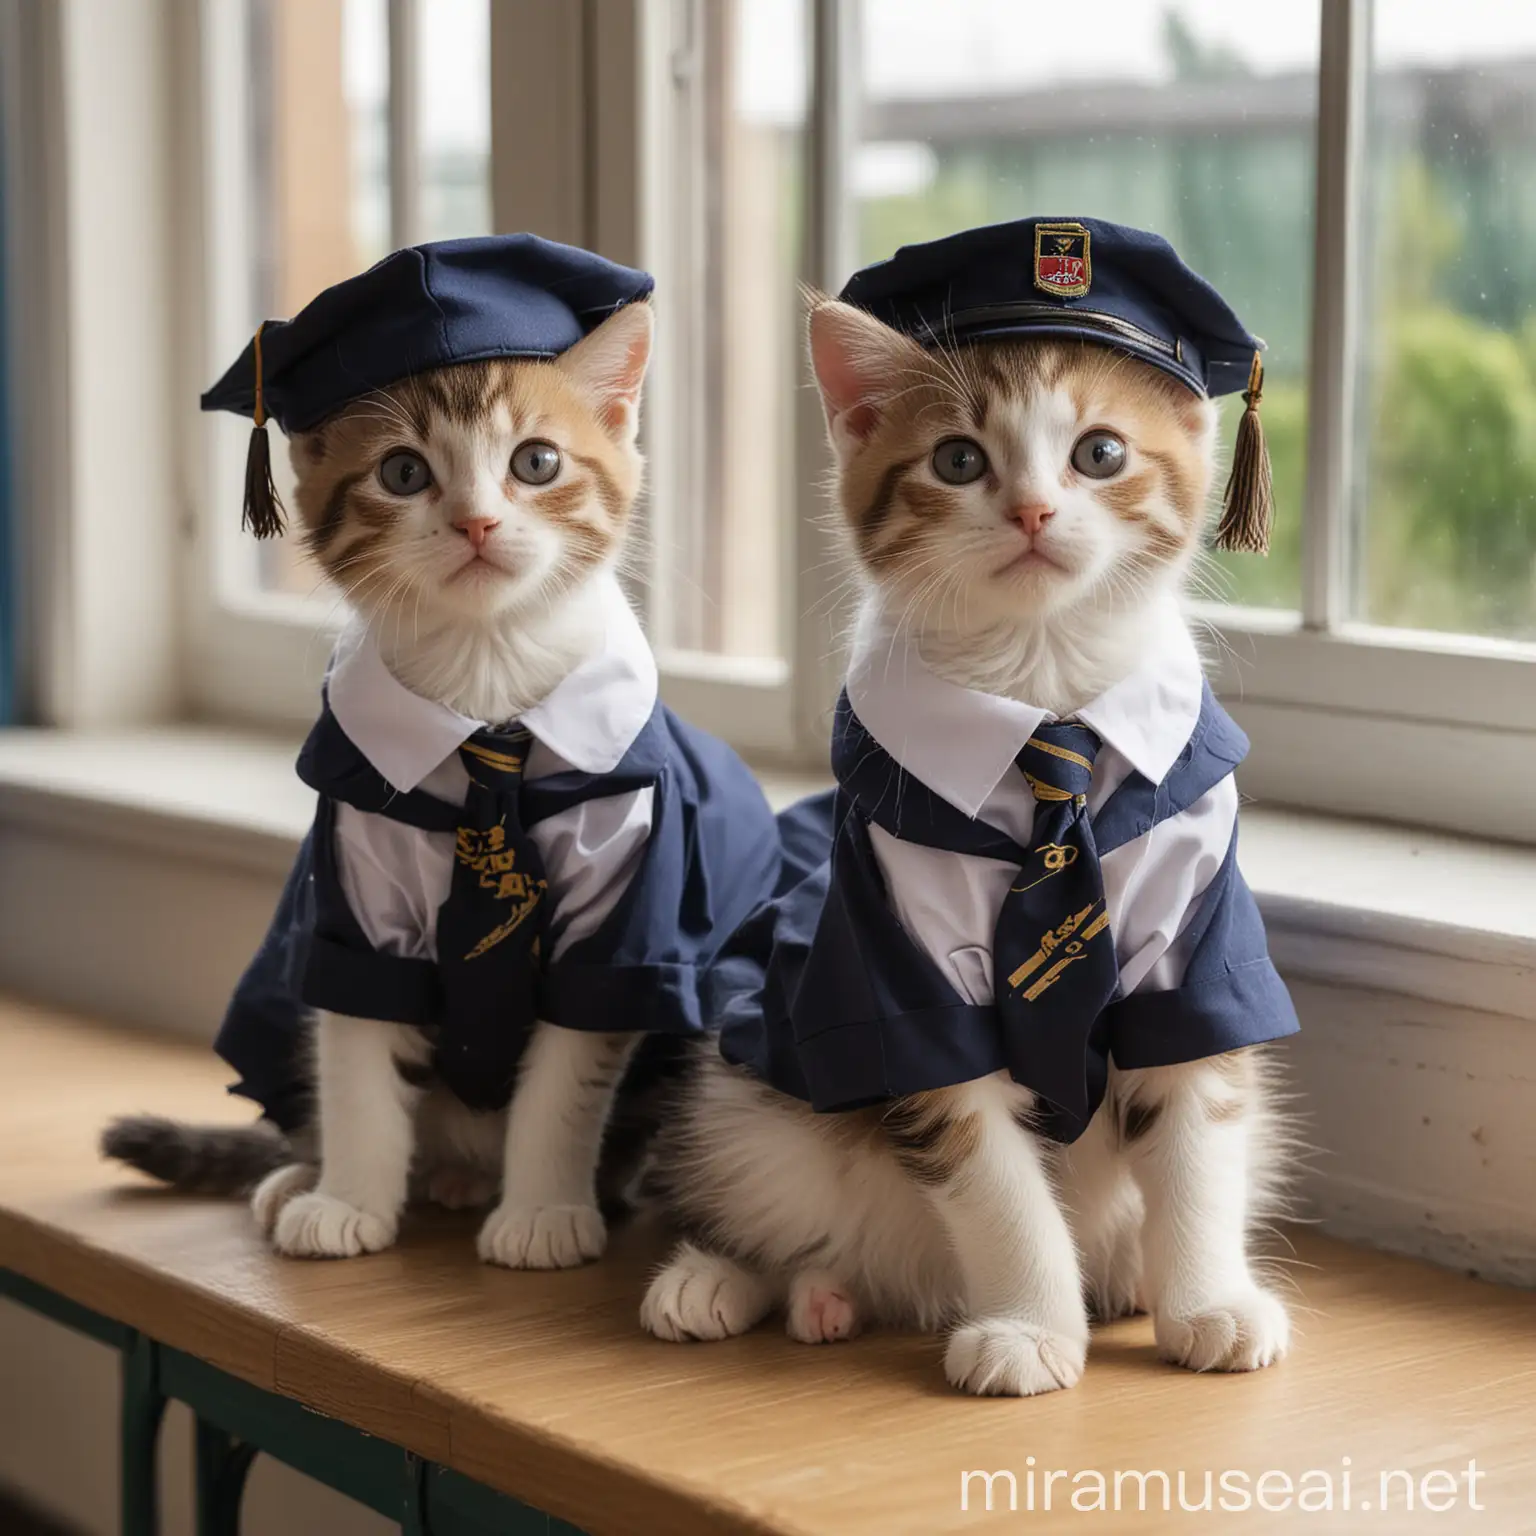 Two Cute Kittens in School Uniforms Sitting in an Open Classroom